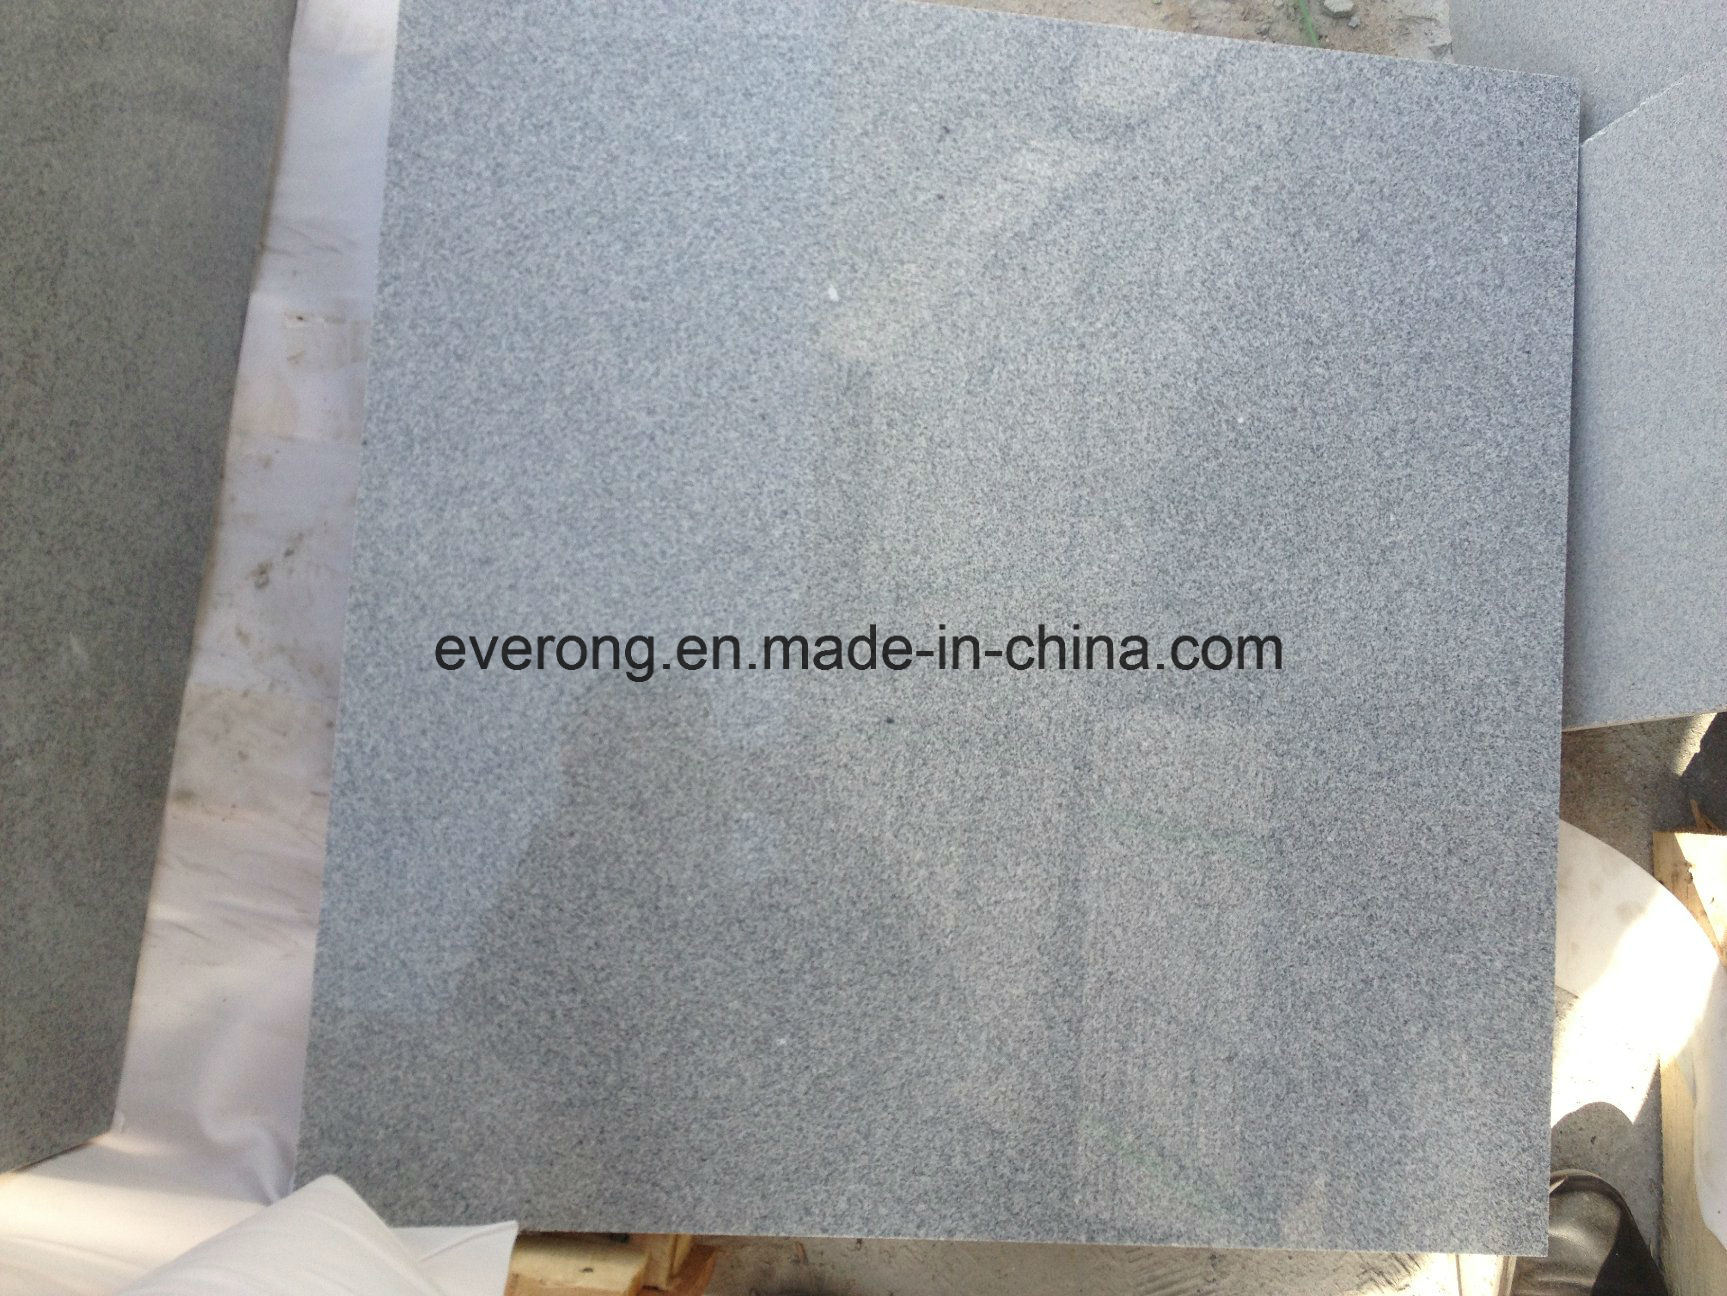 Padang Light G633 Granite Slab for Countertop and Floor Tile